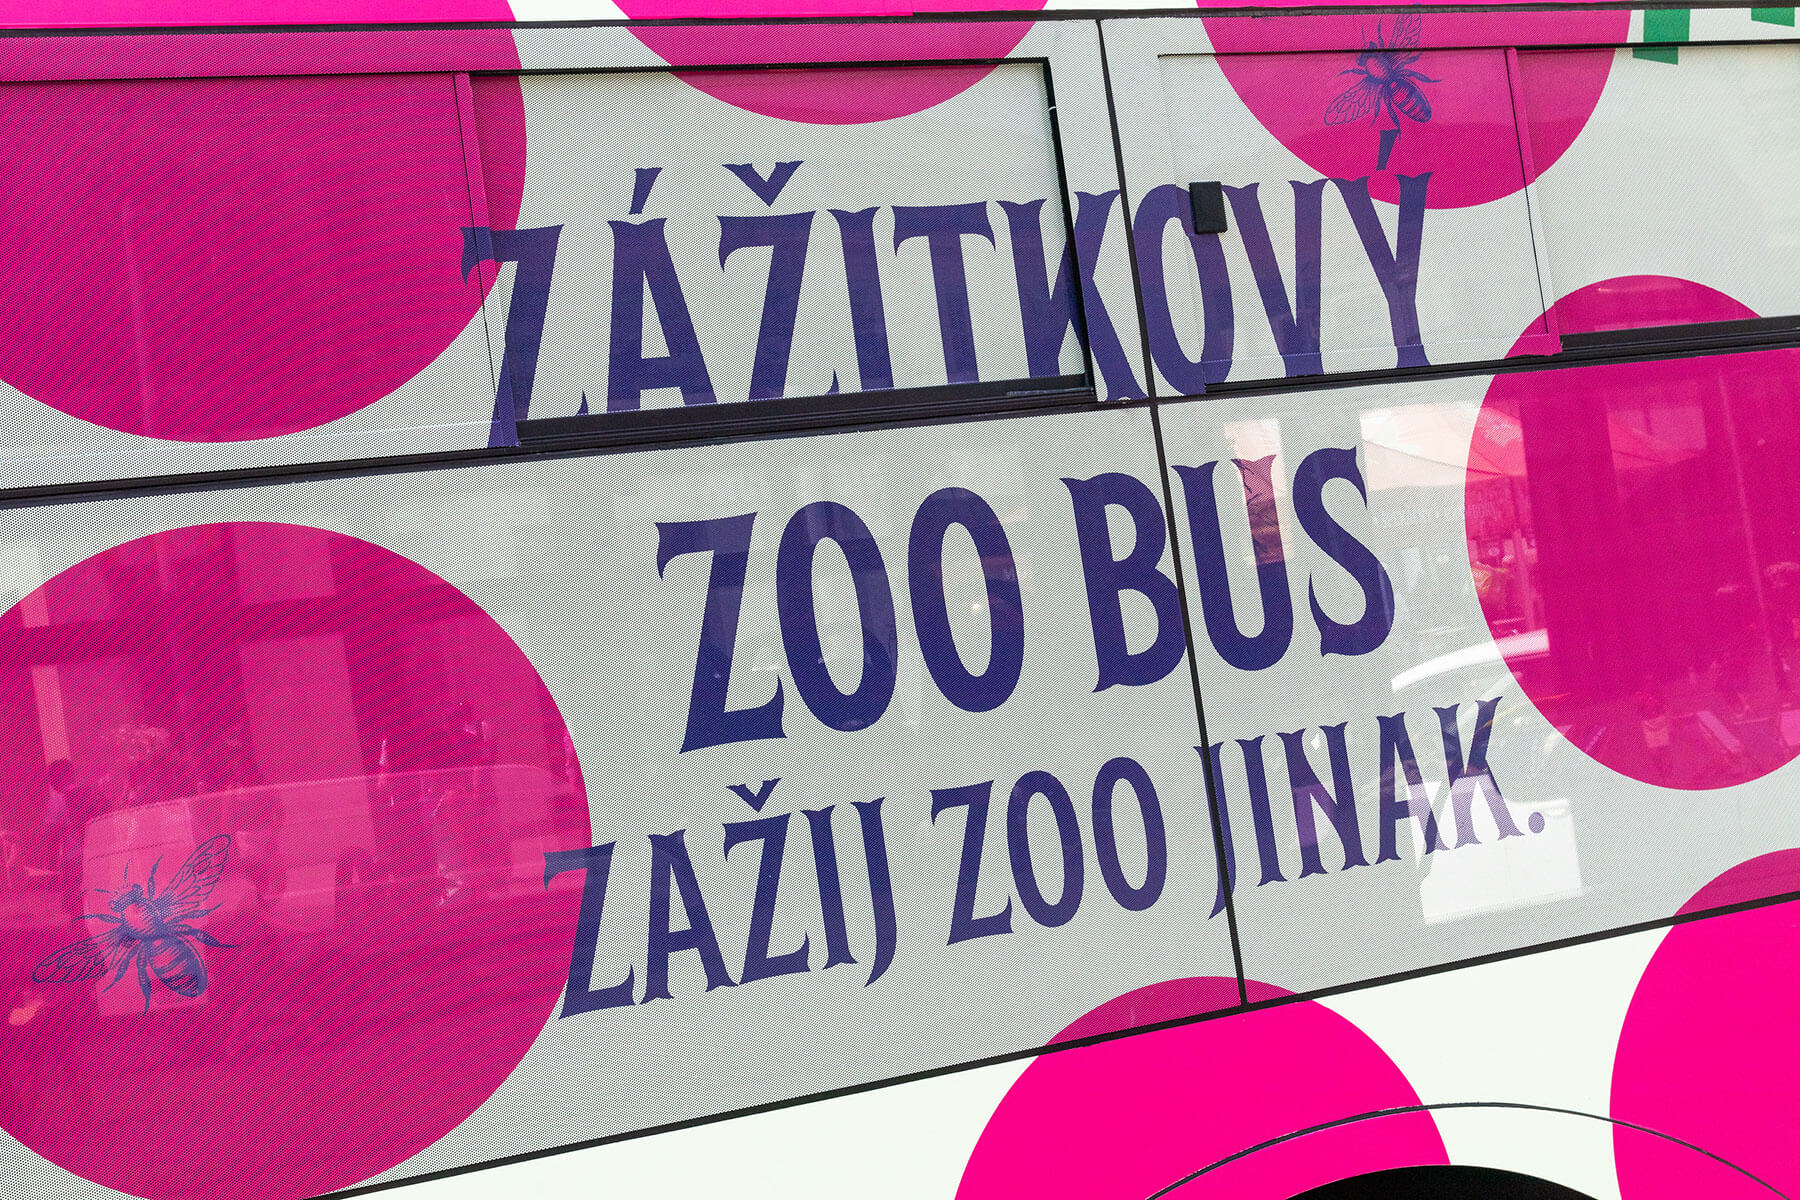 Zážitkový zoo bus a případ Tajemného deníku